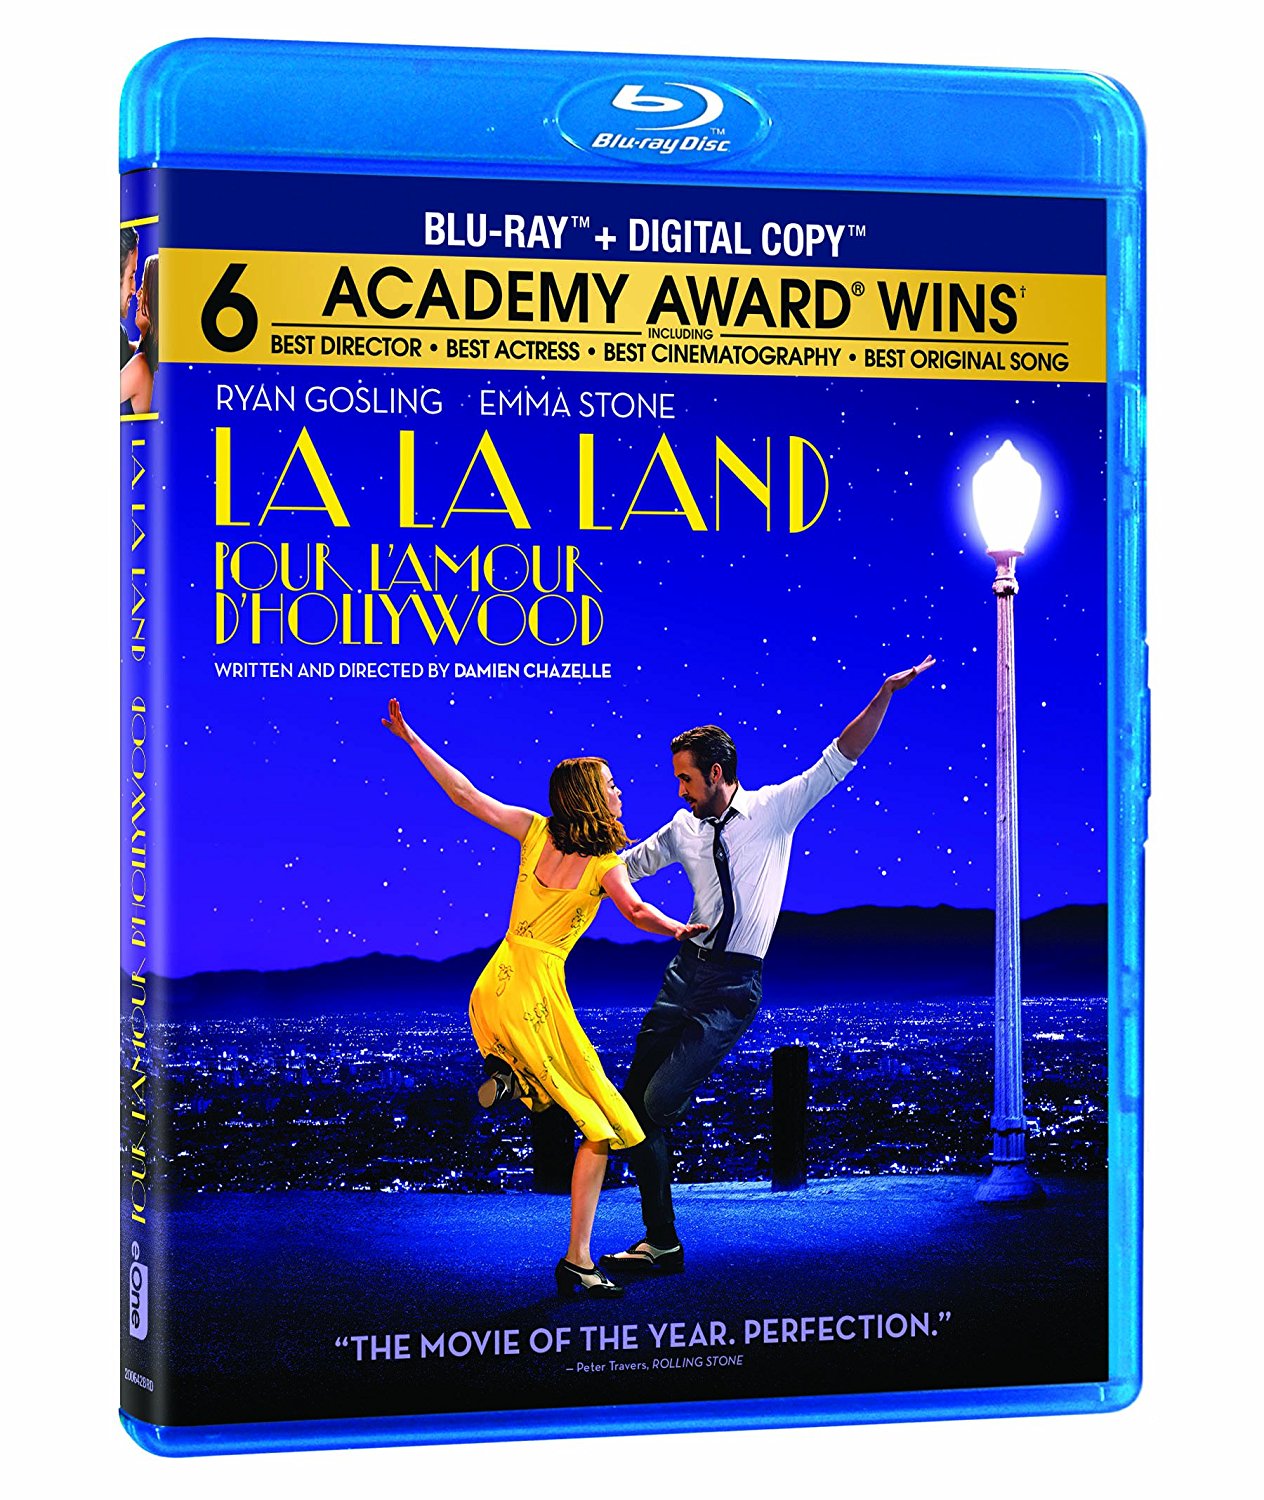 La La Land now available on DVD.